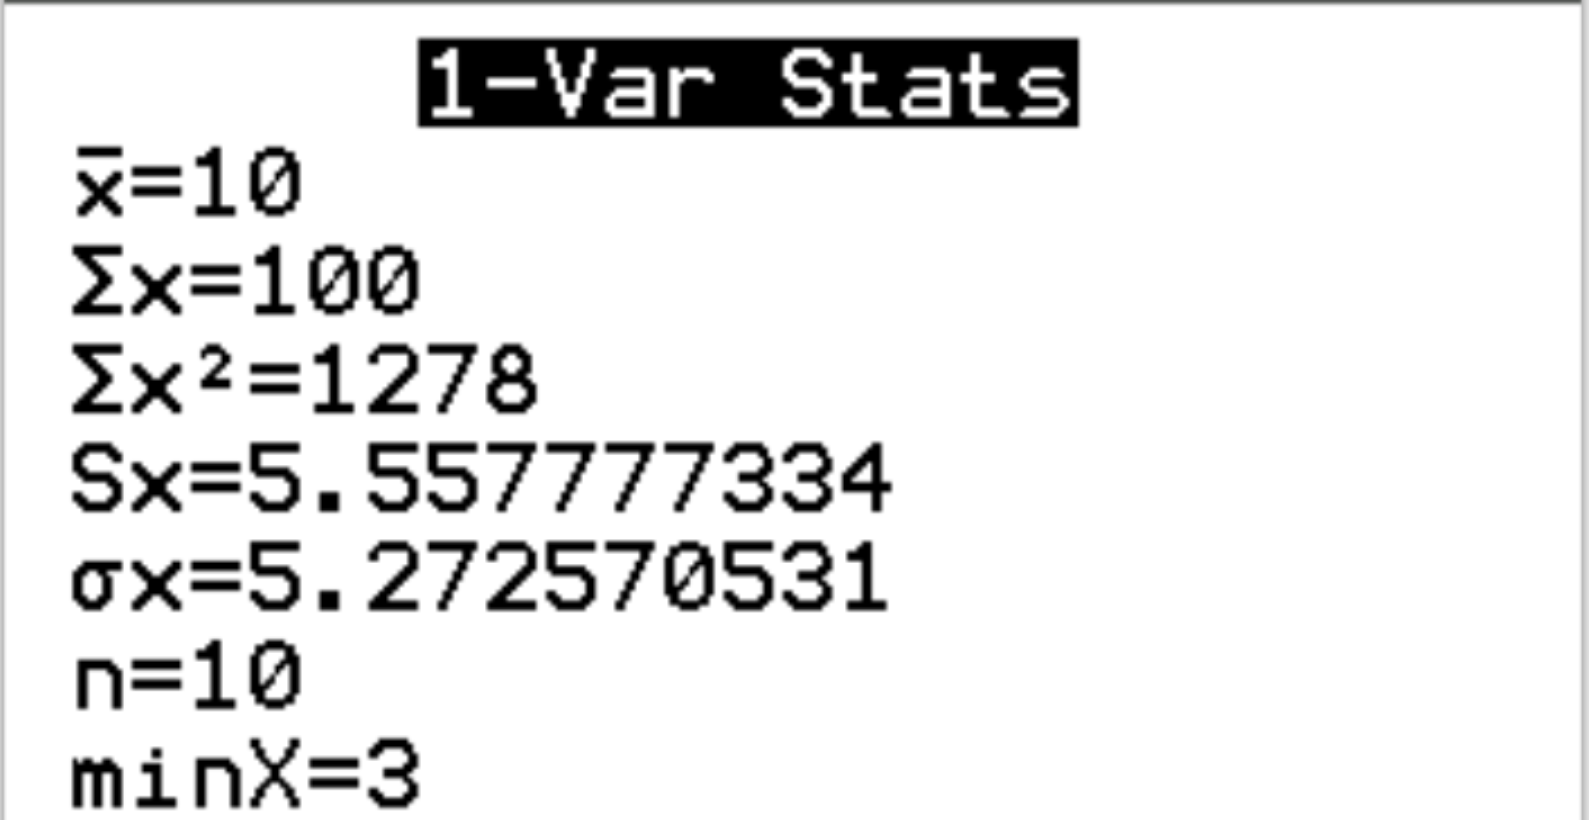 1-Var stats output on a TI-84 calculator